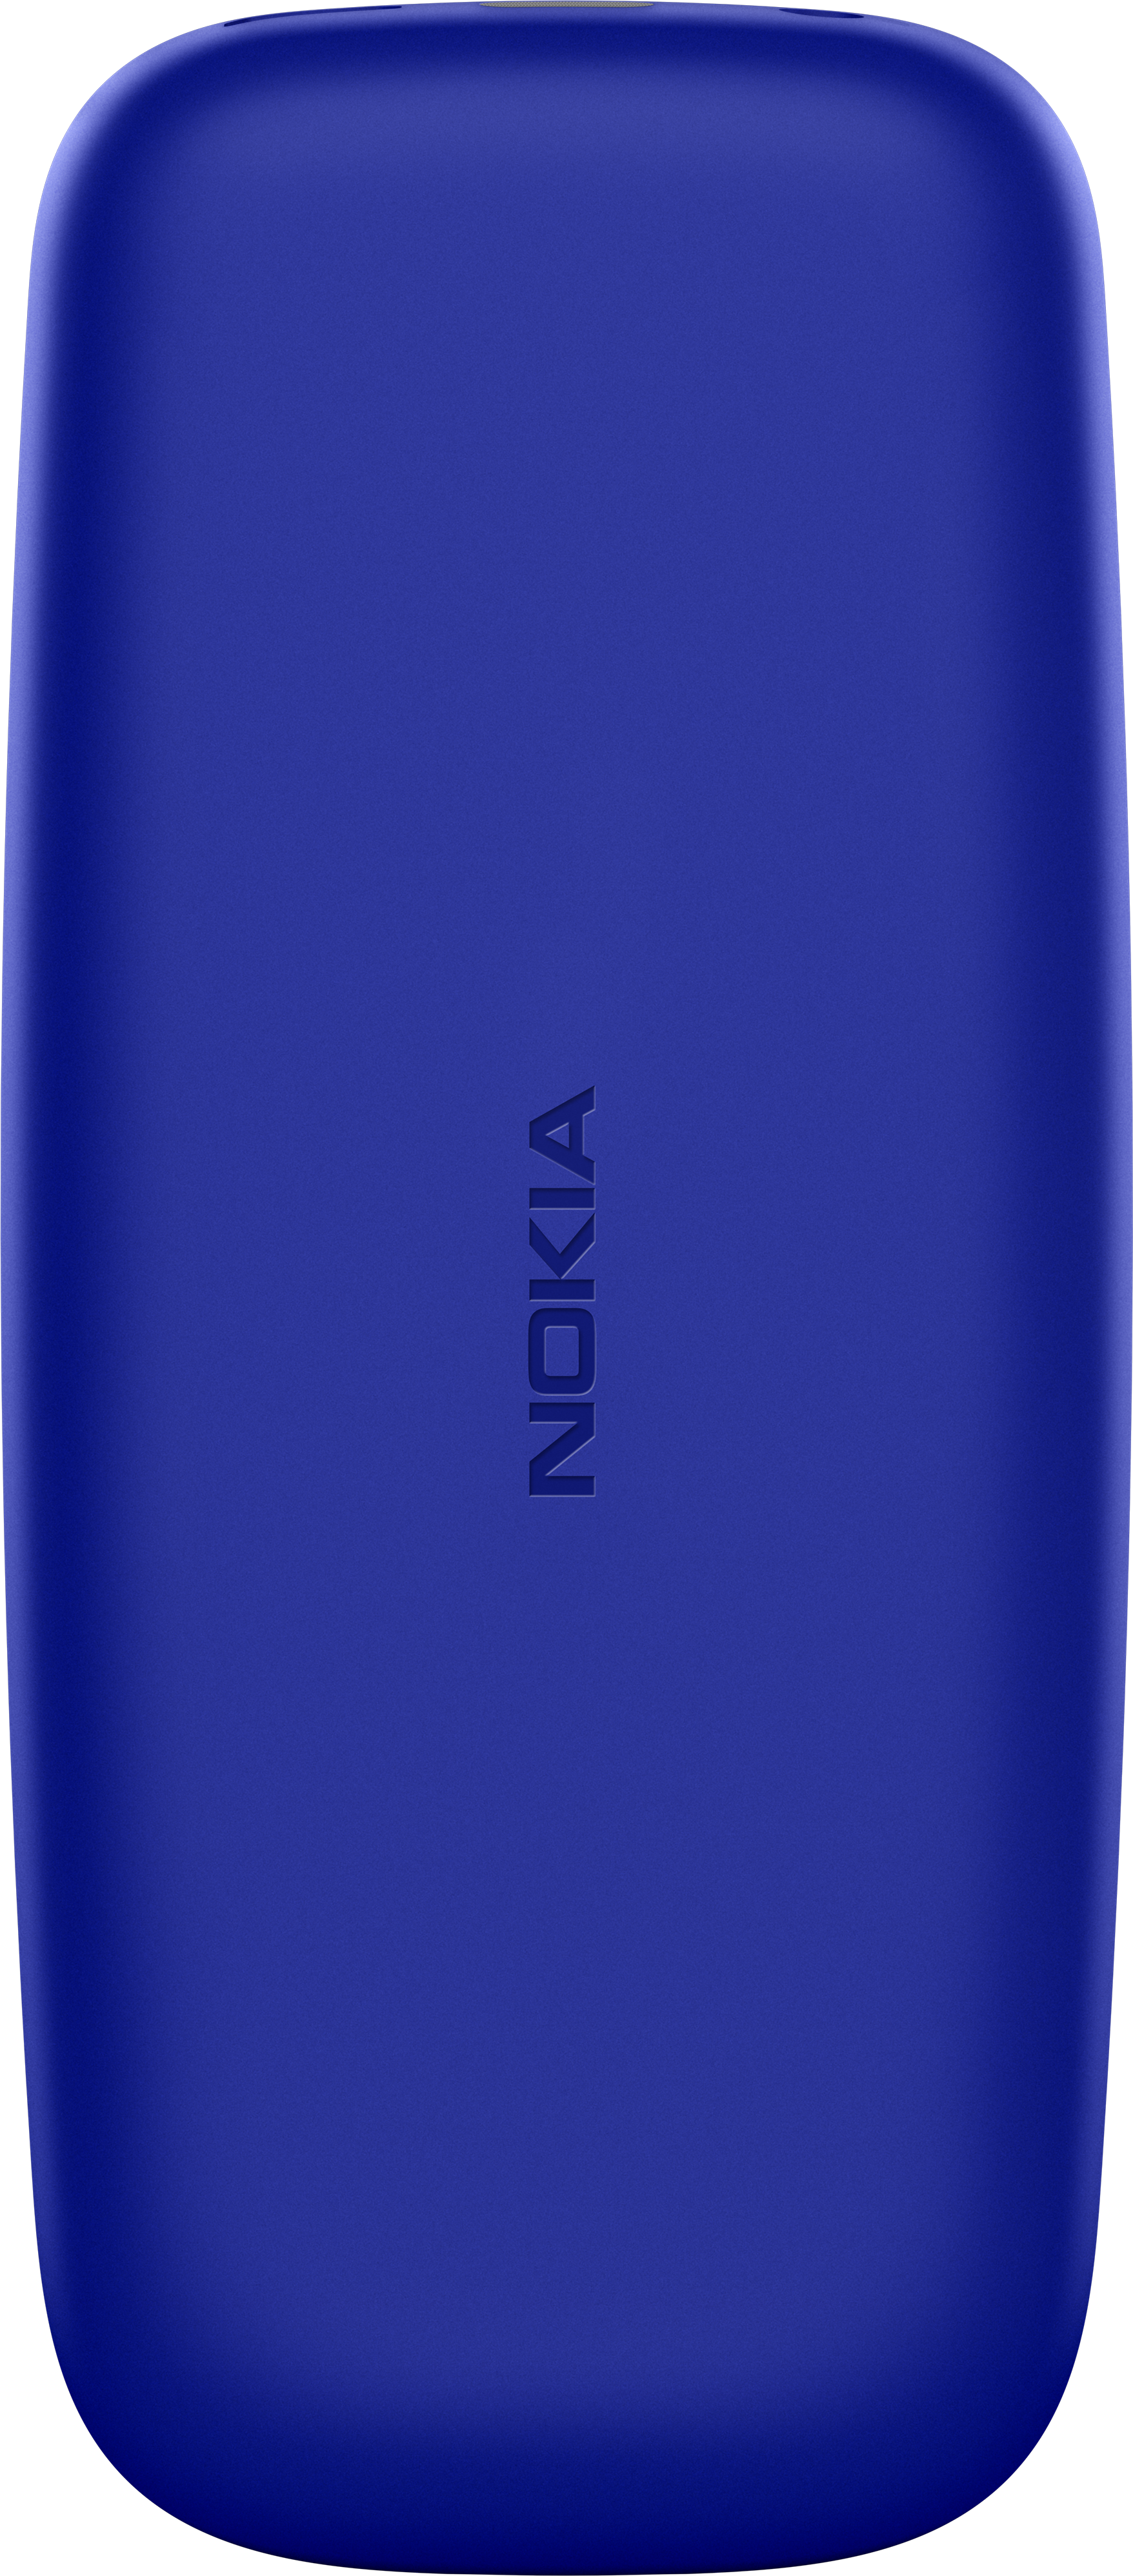 Características detalladas Nokia 105 (2019) 